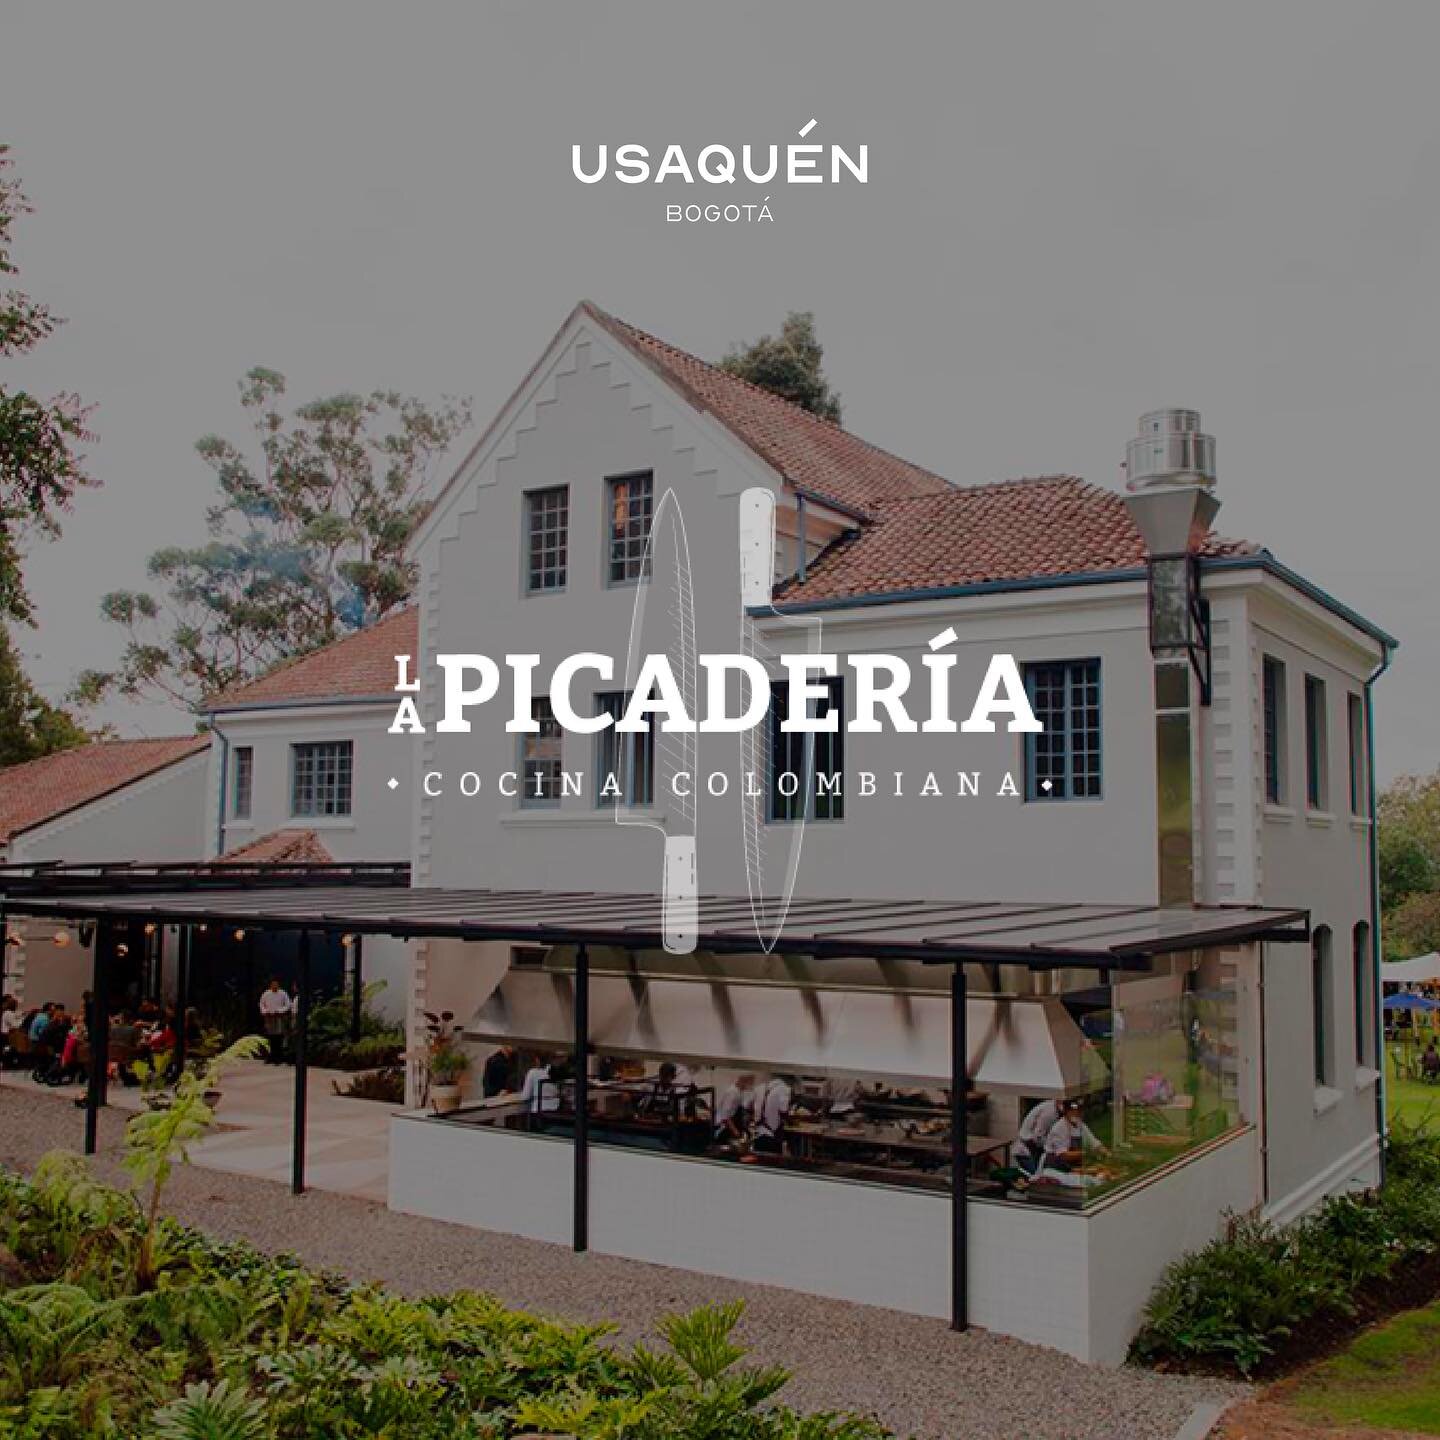 La Picader&iacute;a &ndash; Una Experiencia Gastron&oacute;mica &Uacute;nica🍴

@LaPicaderia se establece como una experiencia culinaria &uacute;nica en Usaqu&eacute;n especializados en parrilla y cocina colombiana para que todos disfruten. 

&iexcl;